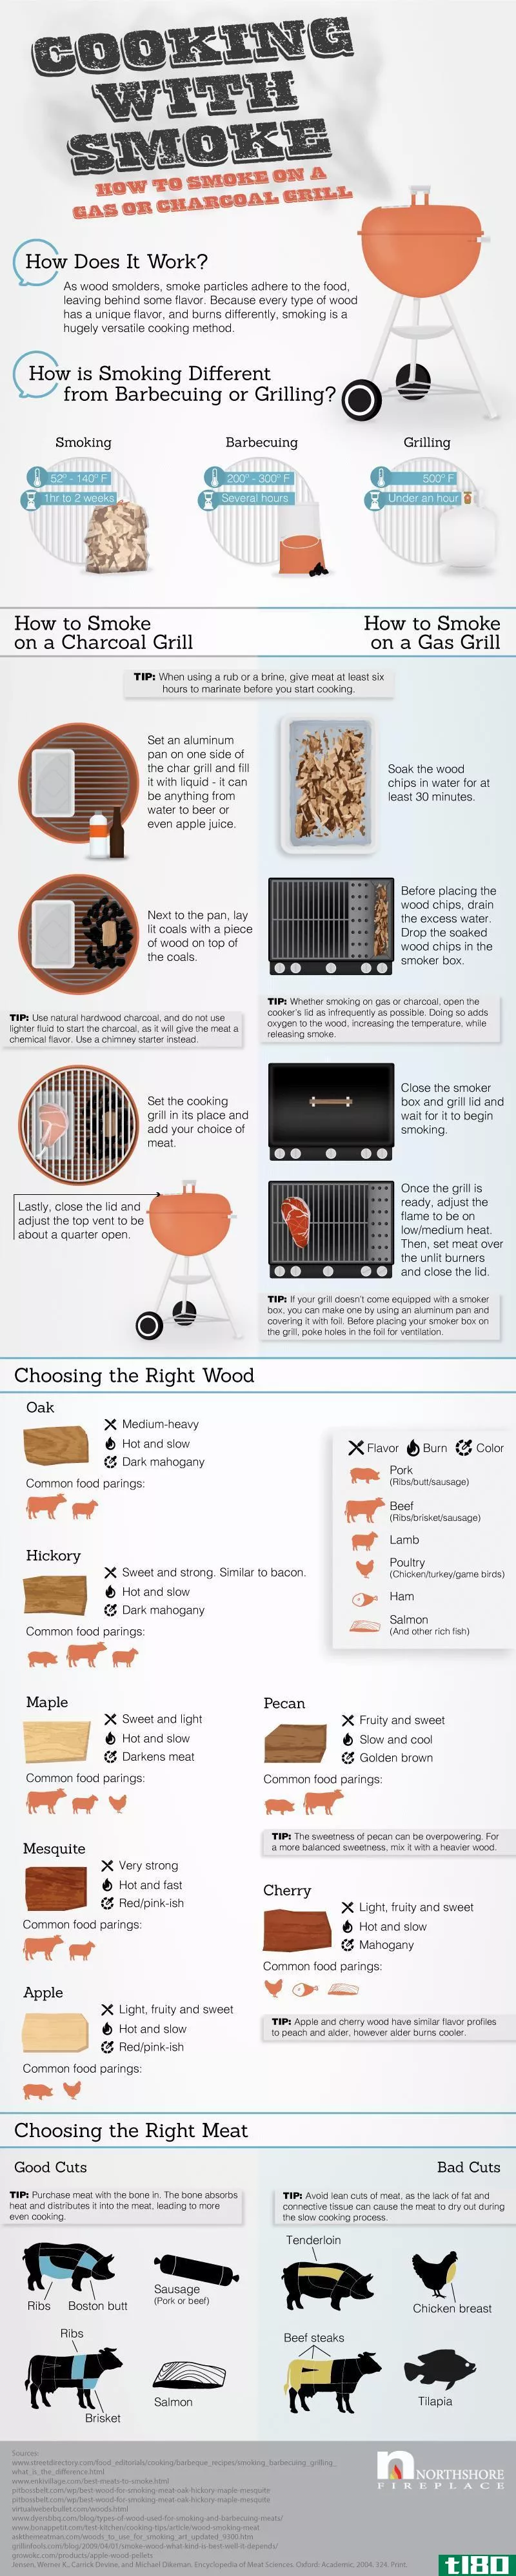 通过这张信息图，了解如何在煤气或木炭烤架上熏肉